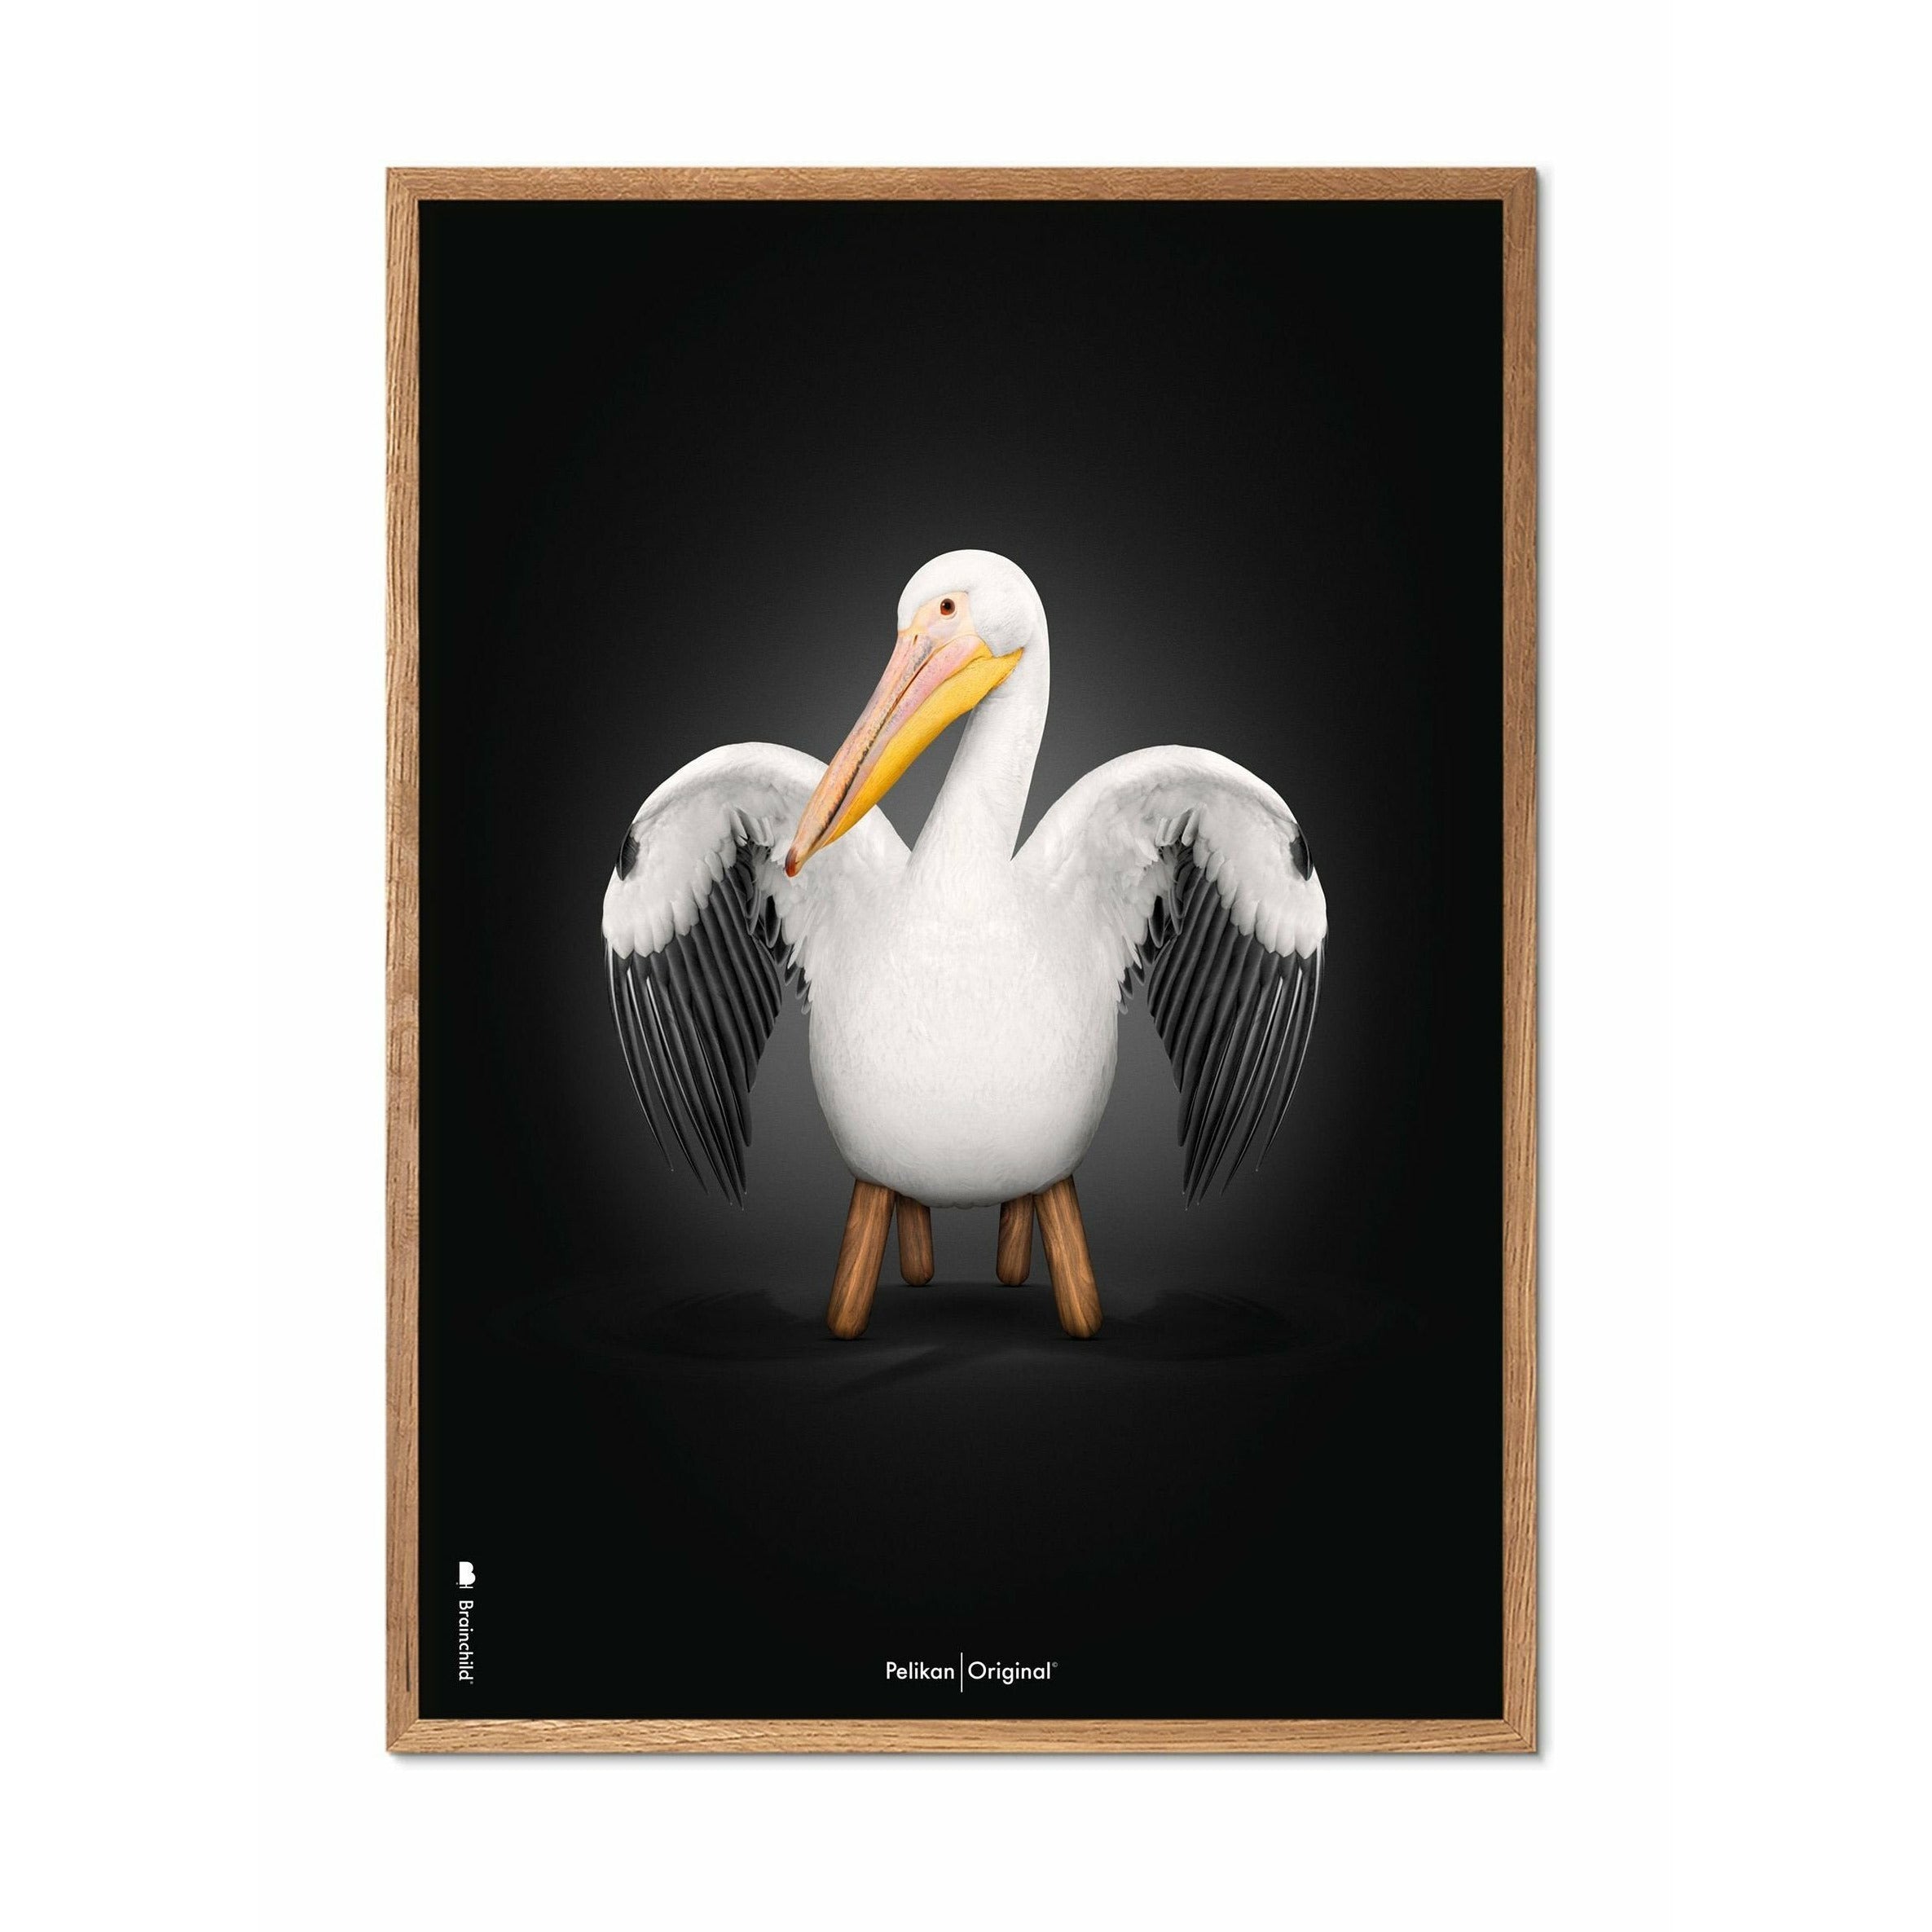 Brainchild Pelikan Classic Poster, Rahmen aus hellem Holz 70x100 Cm, schwarzer Hintergrund